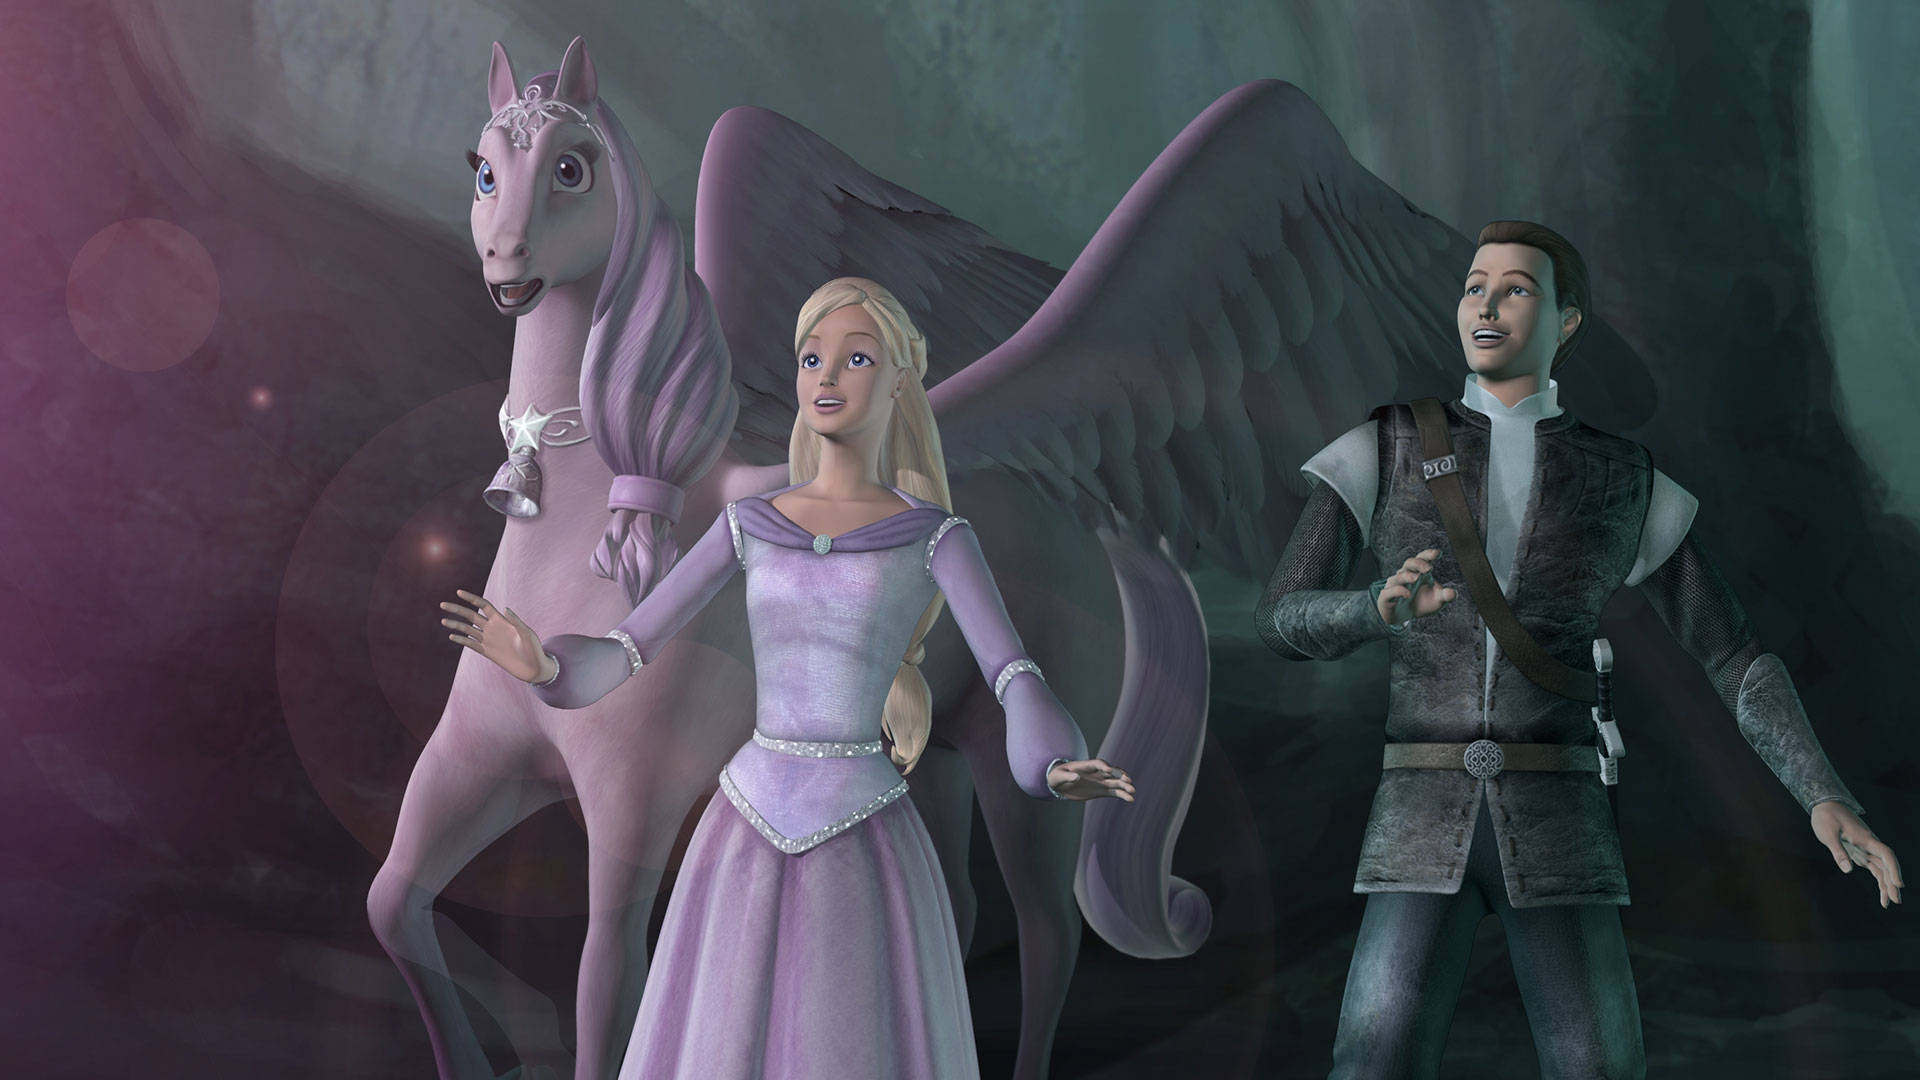 Barbie Prinsesse Magi af Pegasus skaber fantastiske verdener. Wallpaper